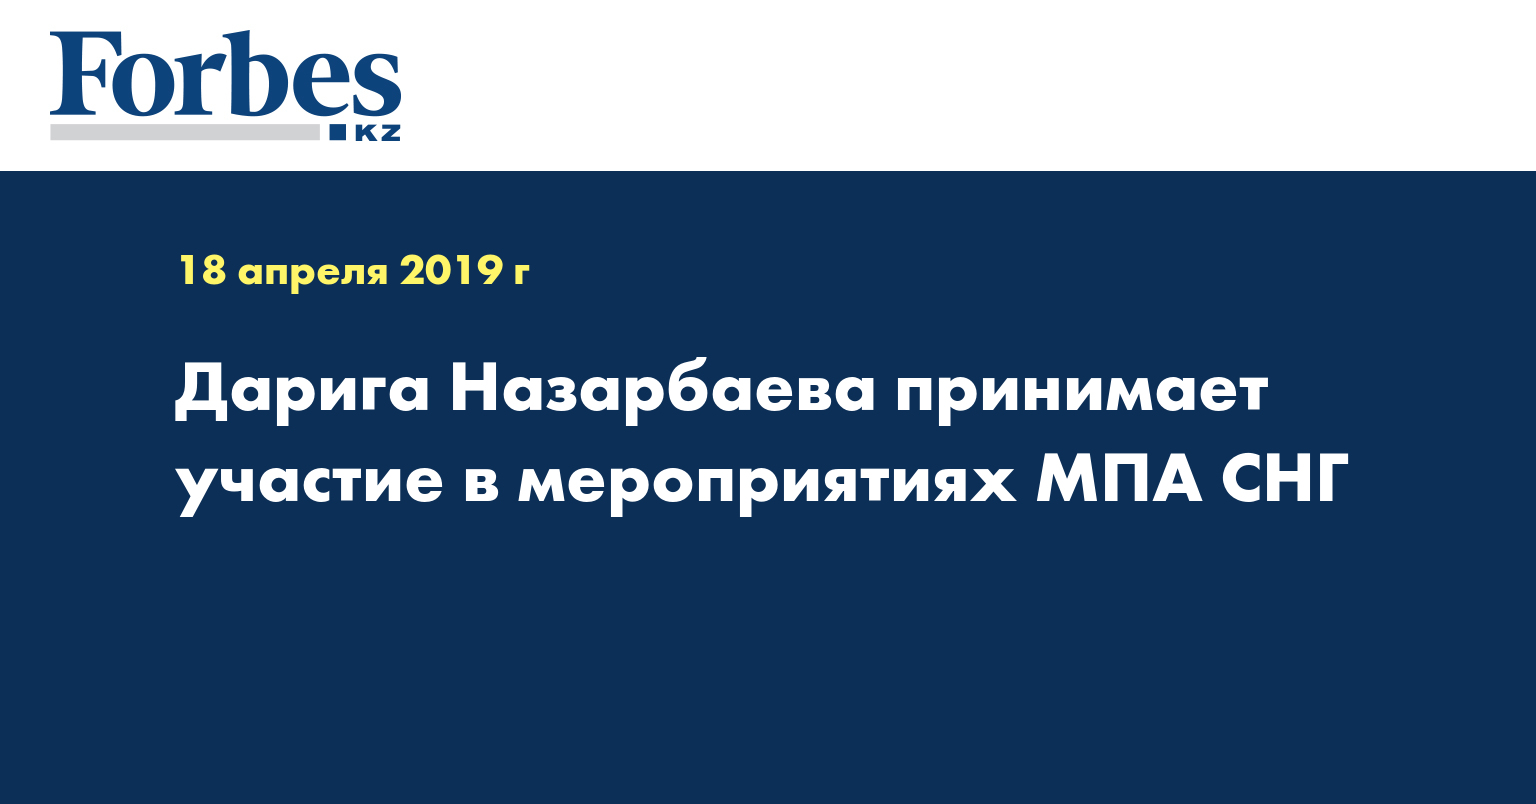 Дарига Назарбаева принимает участие в мероприятиях МПА СНГ